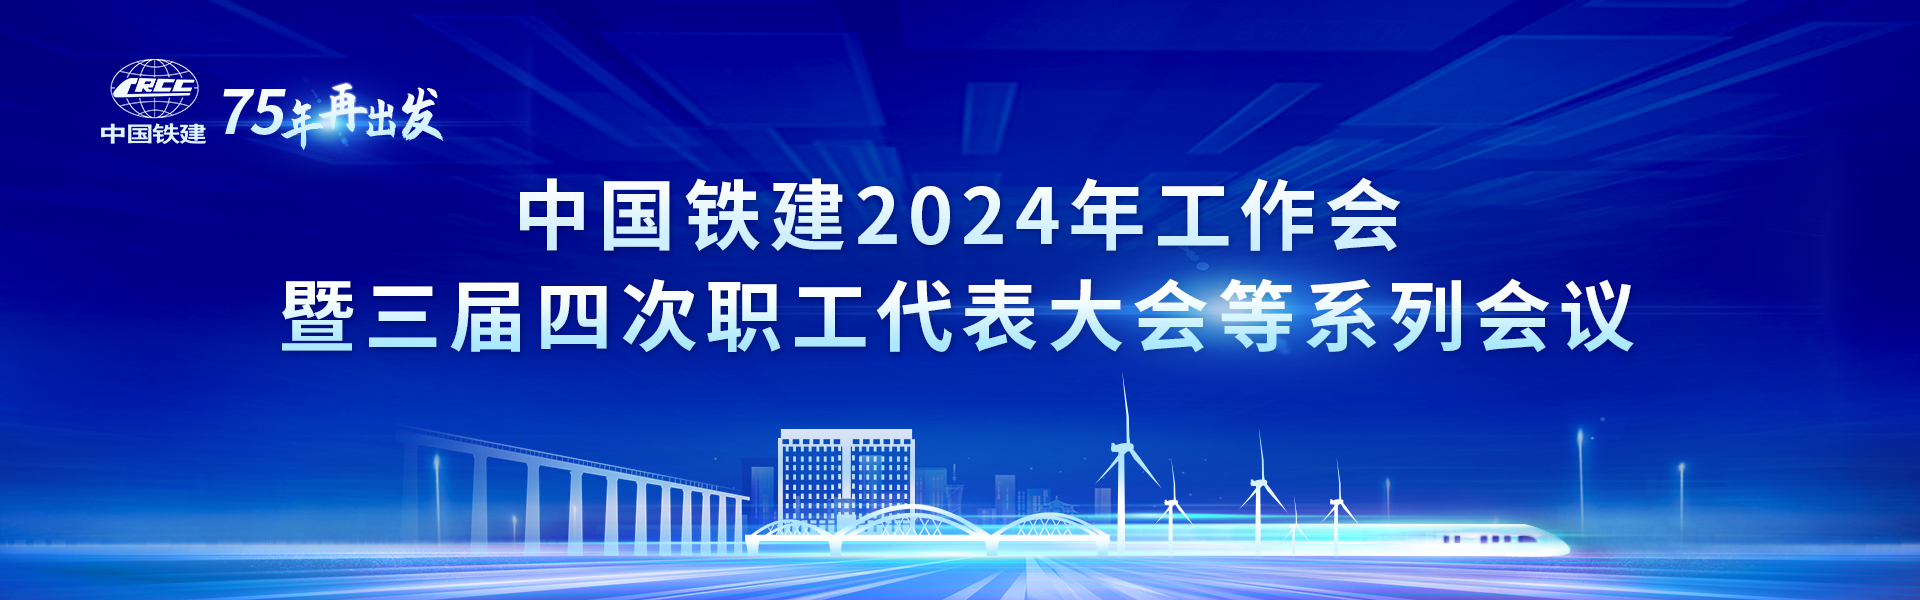 中国铁建2024年工作会暨三届四次职工代表大会等系列会议